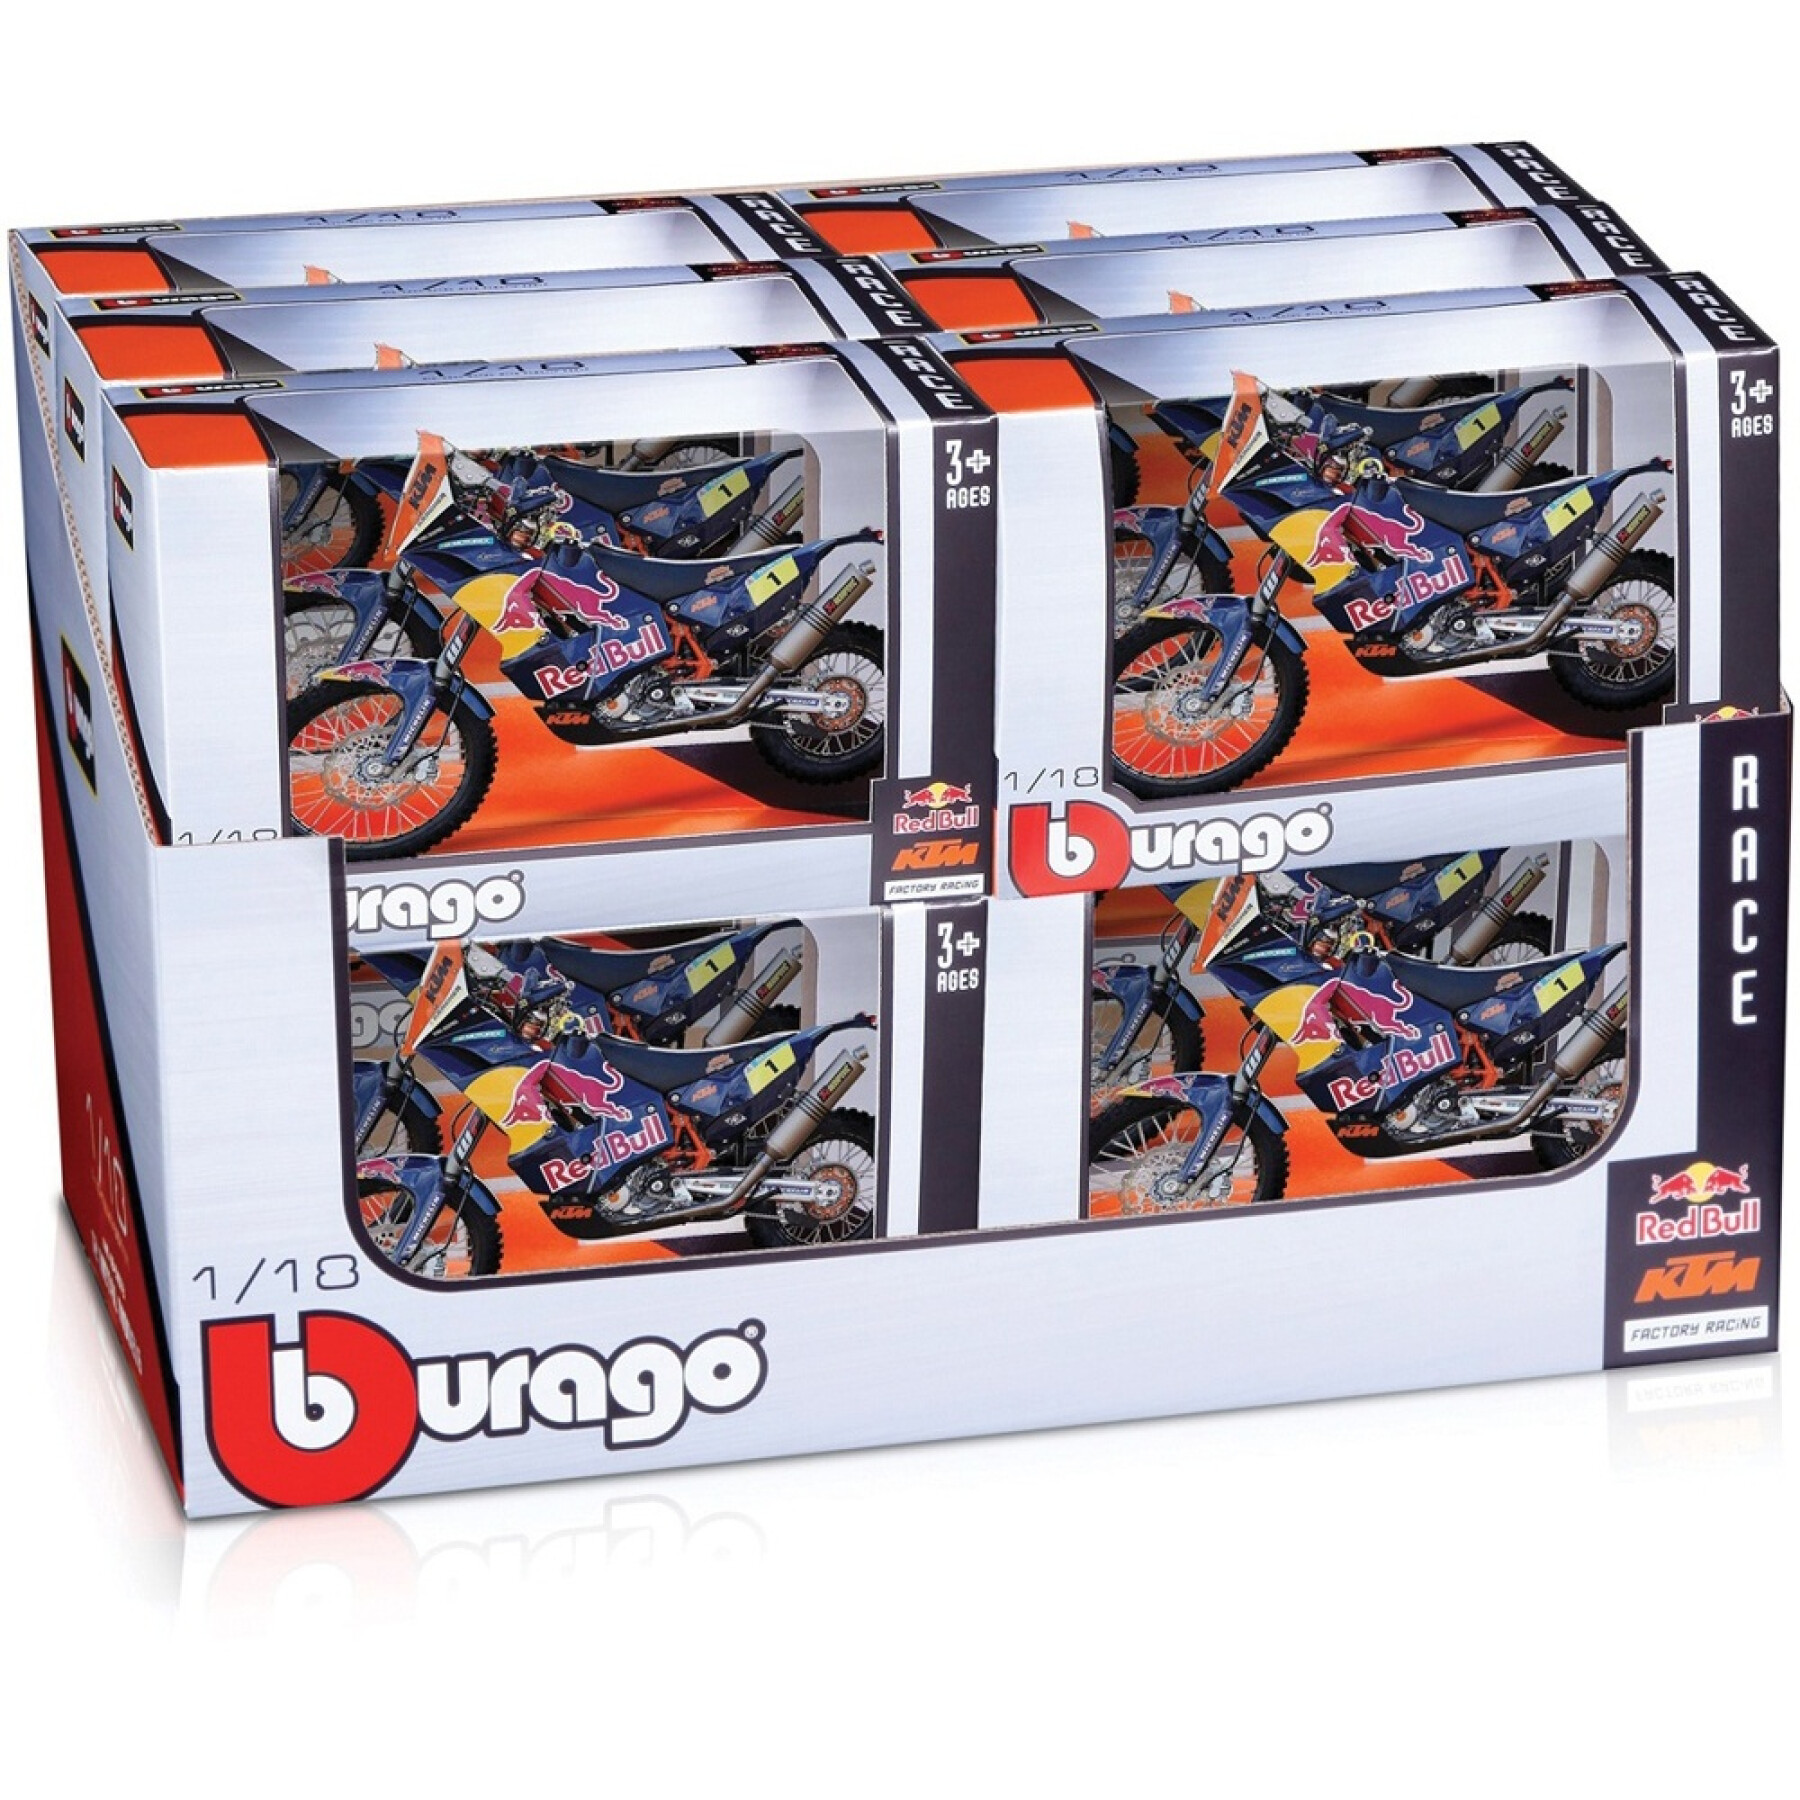 Juegos de motos y coches Burago Red Bull Ktm 1/18